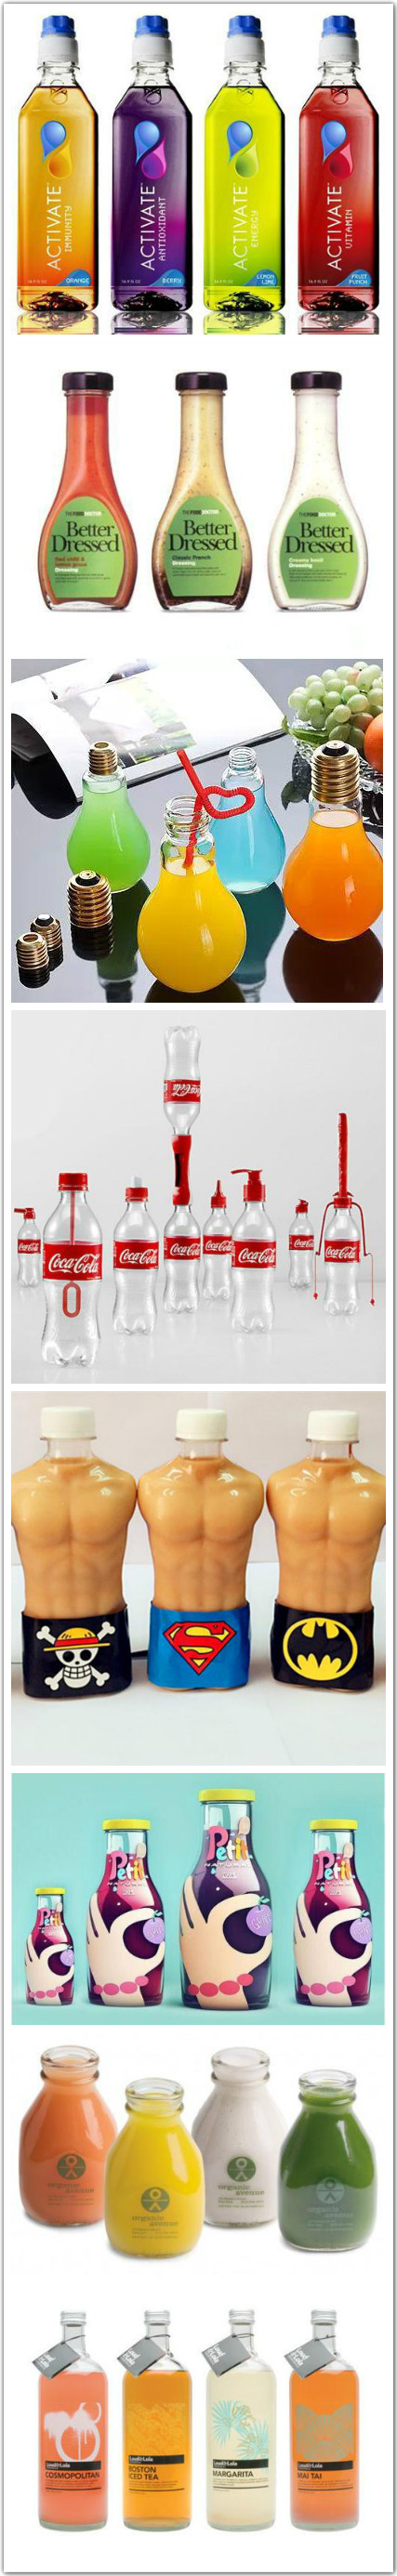 北京创意饮料瓶设计_高瑞品牌